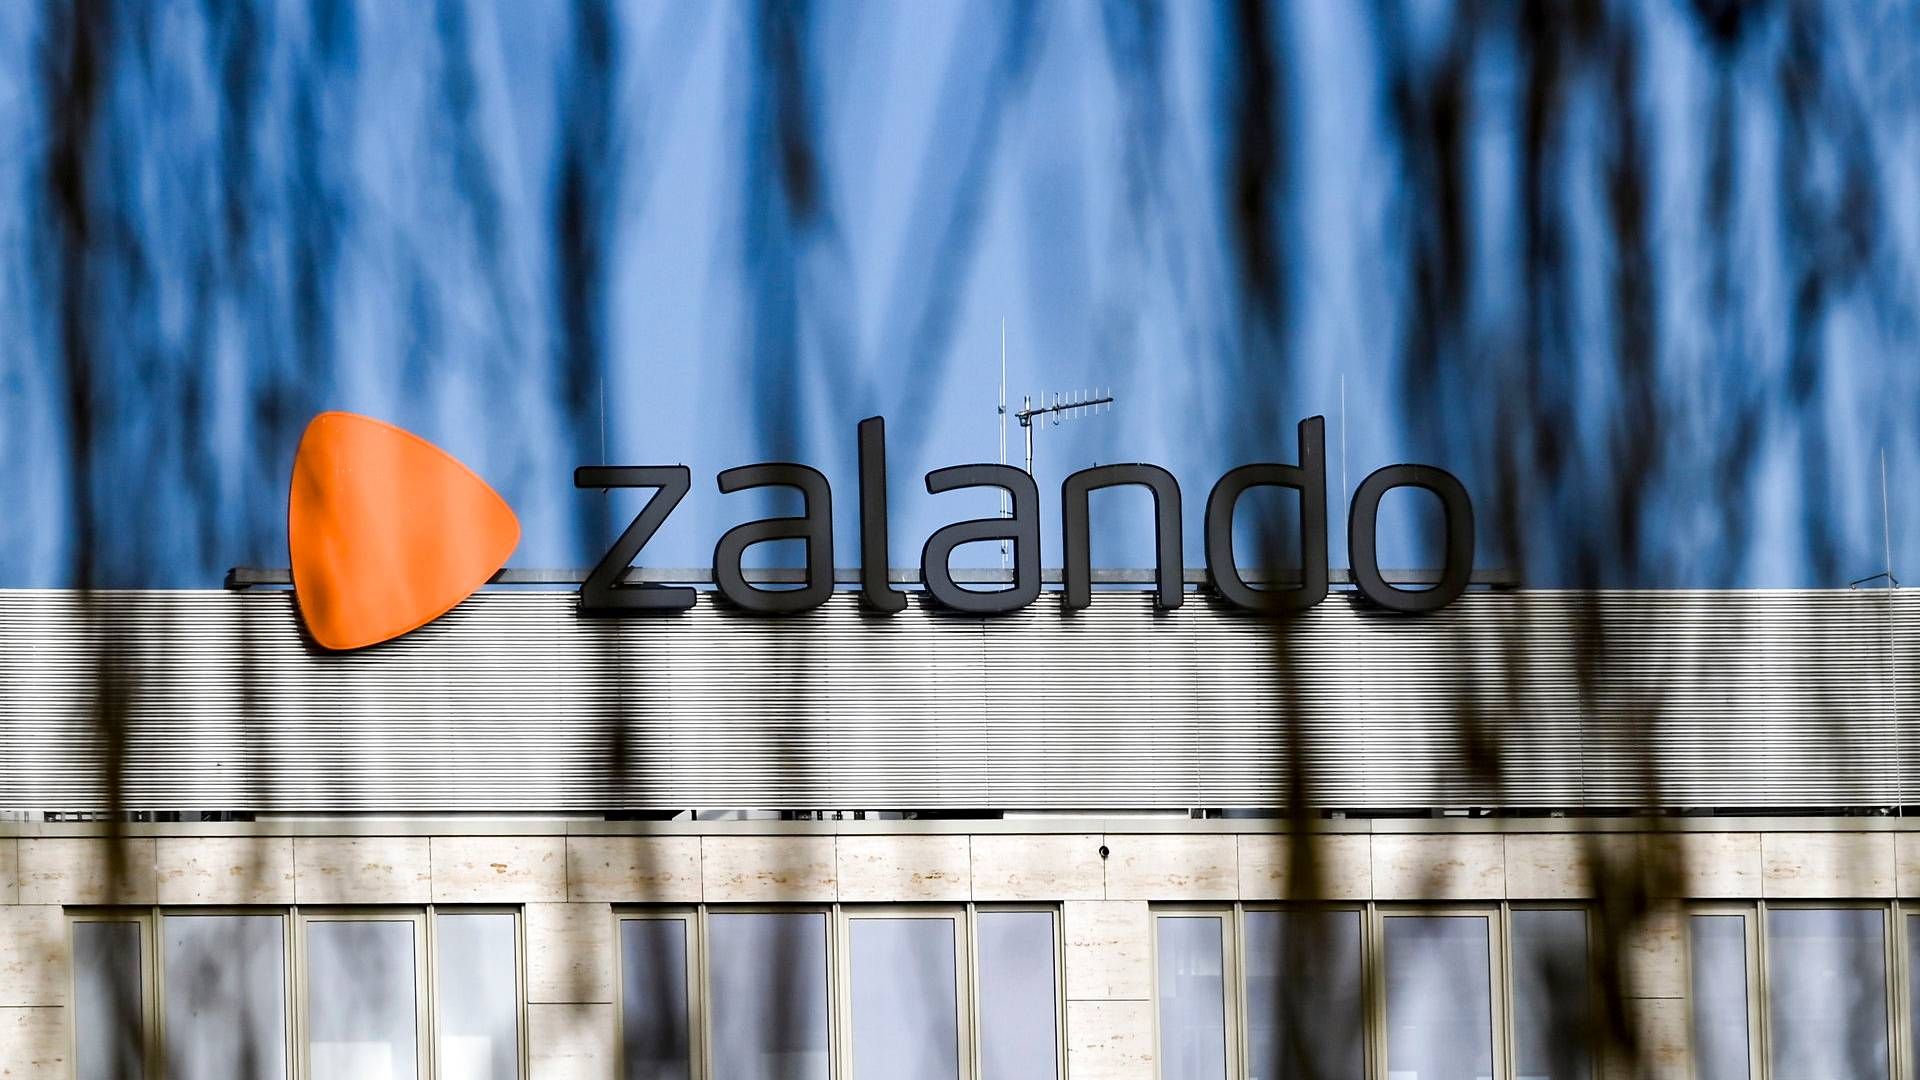 Zalandos chef for bæredygtighed er rykket til britiske Asos. | Foto: Jens Kalaene/ap/ritzau Scanpix